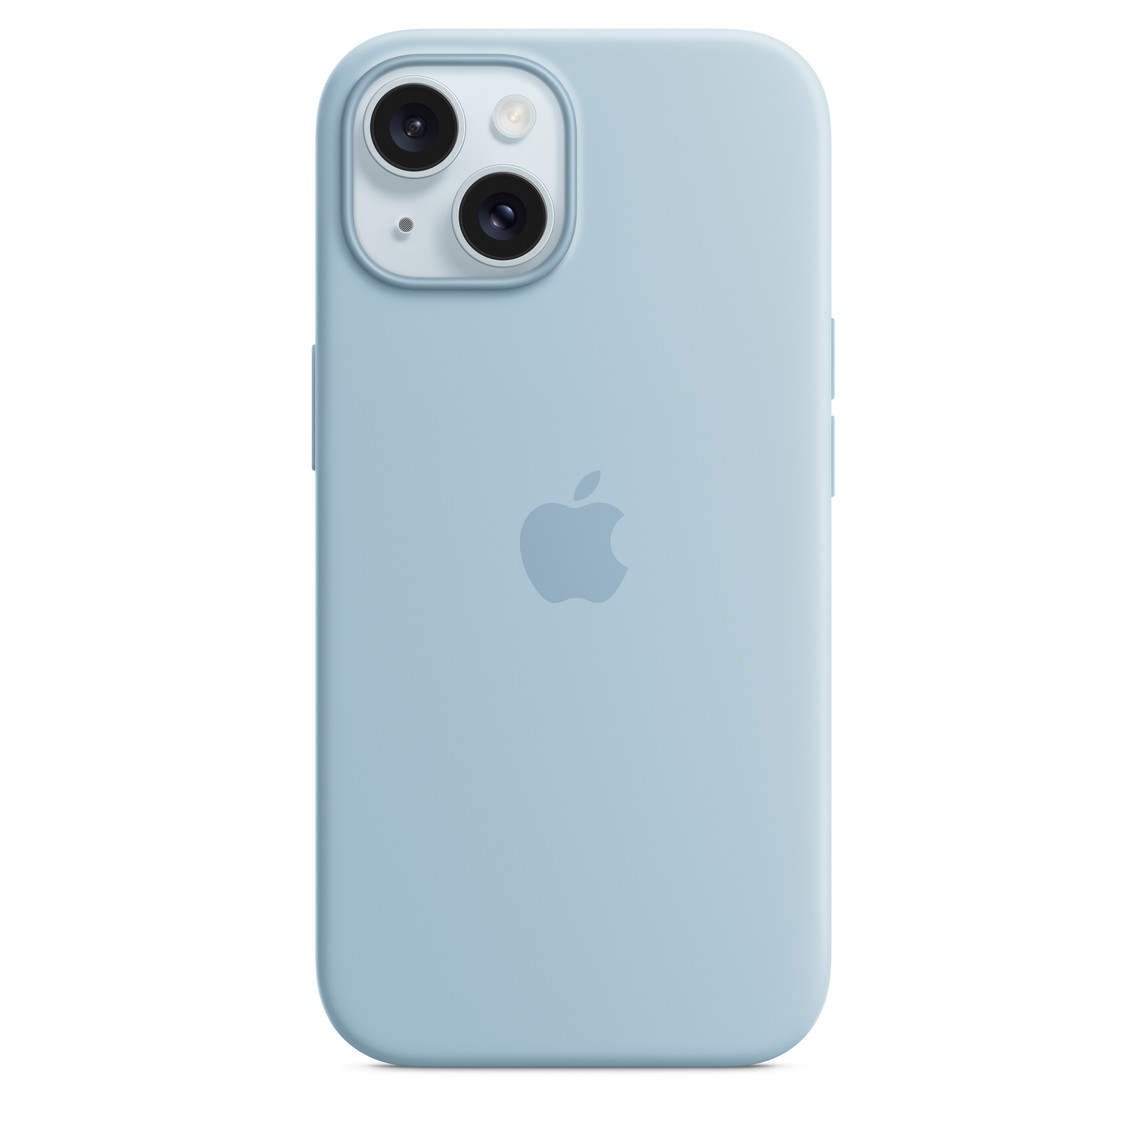 Carcasa de silicona azul claro con MagSafe para el iPhone 15, con el logo de Apple en el centro, puesta en un iPhone 15 azul que se alcanza a apreciar a través del orificio para la cámara.